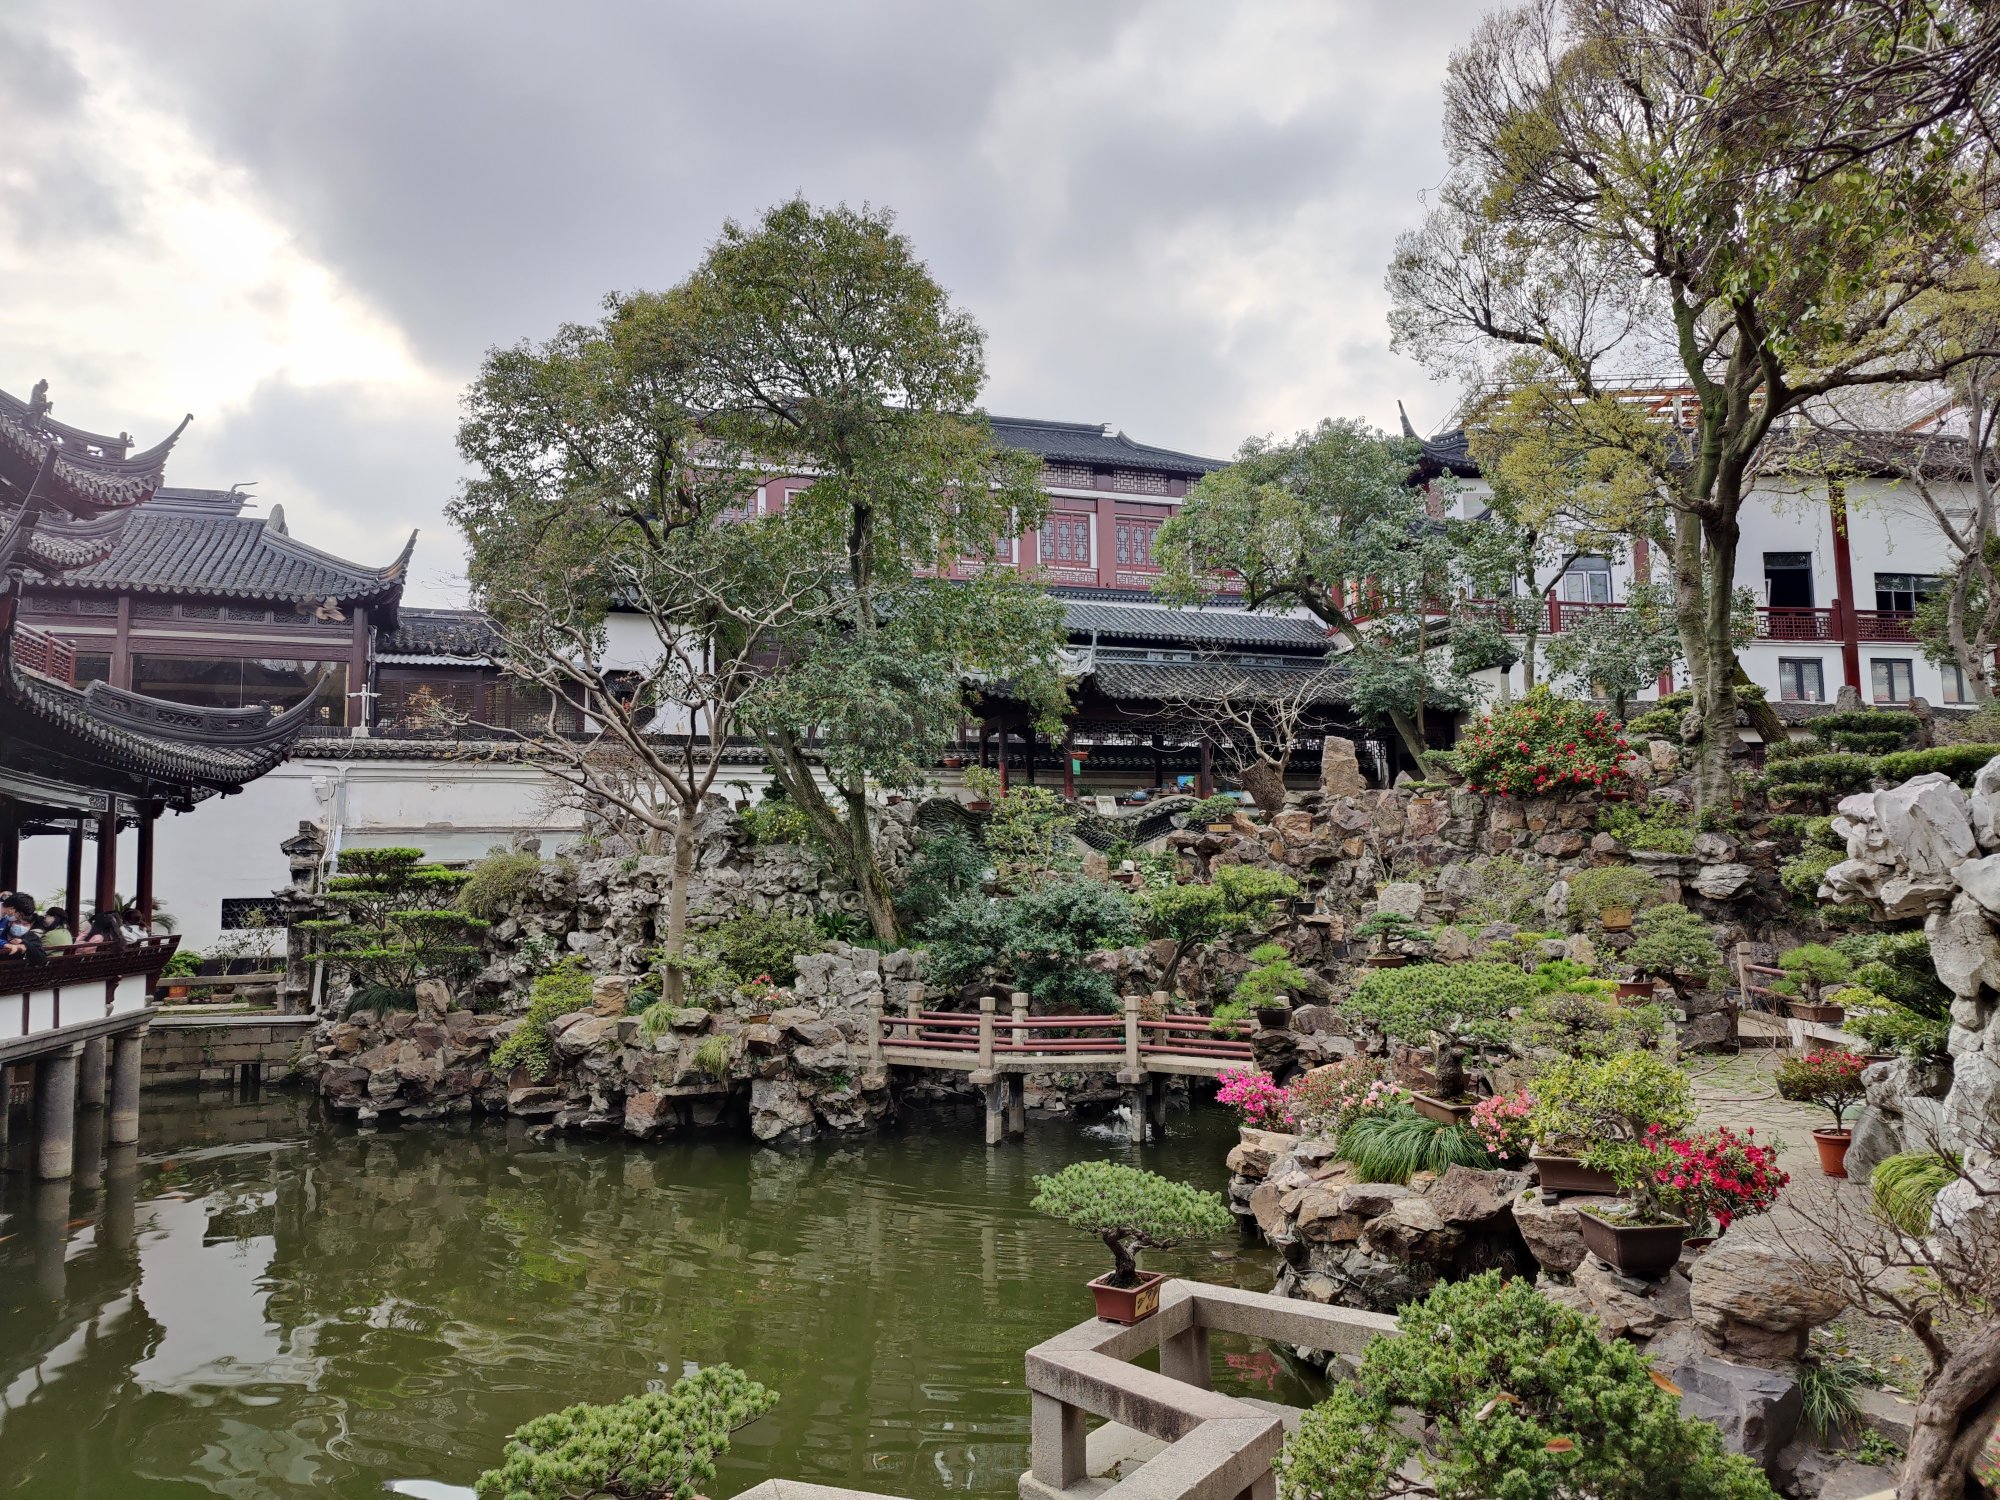 Экскурсии в сад Юй Юань в Шанхае в году 🧭 цены от $ в марте—апреле